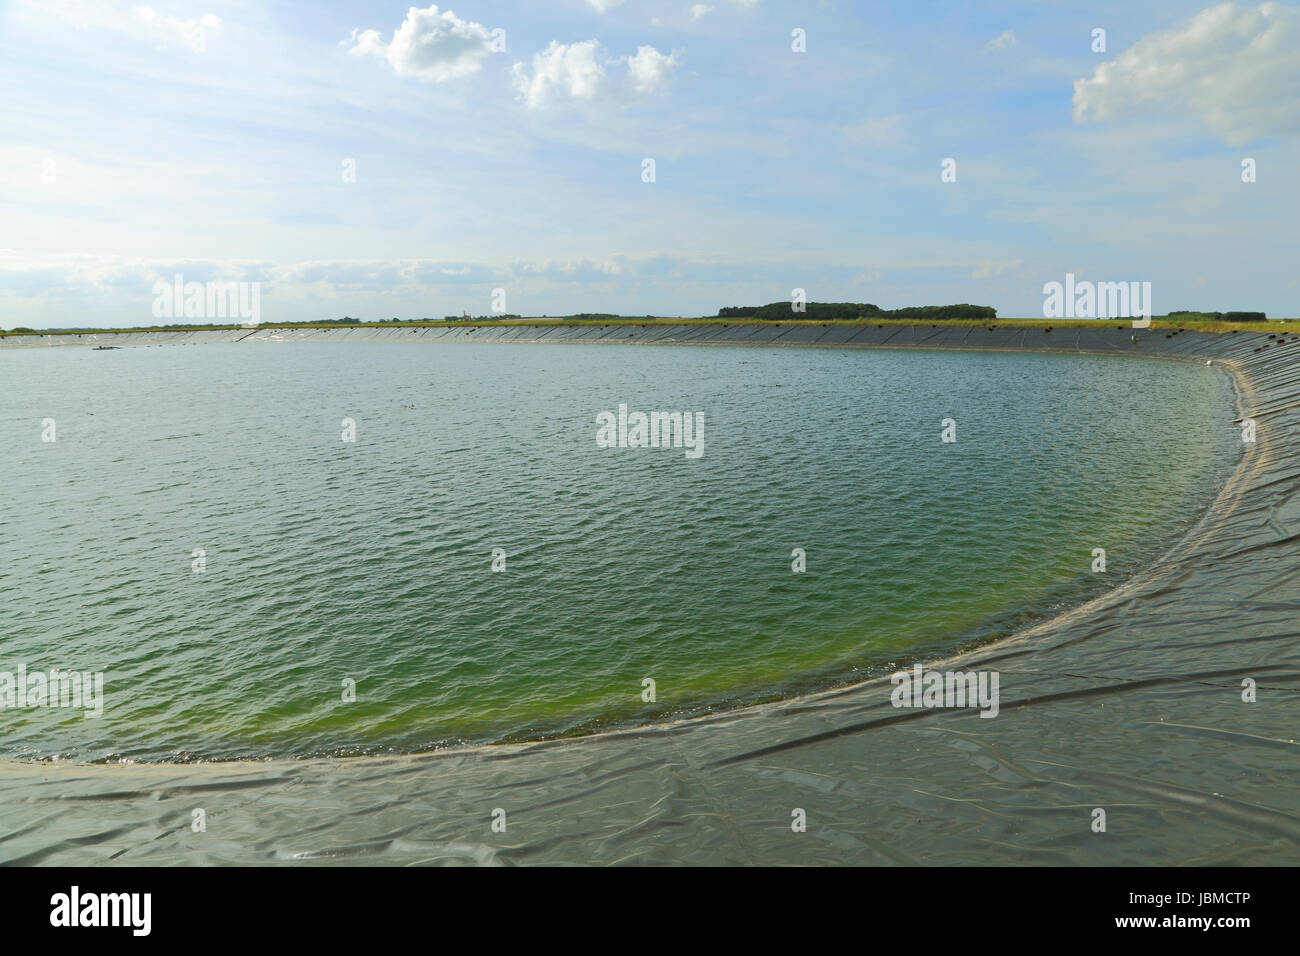 landwirtschaftlichen Reservoir, künstlichen, Wasserversorgung für Landwirtschaft, Norfolk, England, Vereinigtes Königreich, Ernte Wasserreservoirs Stockfoto